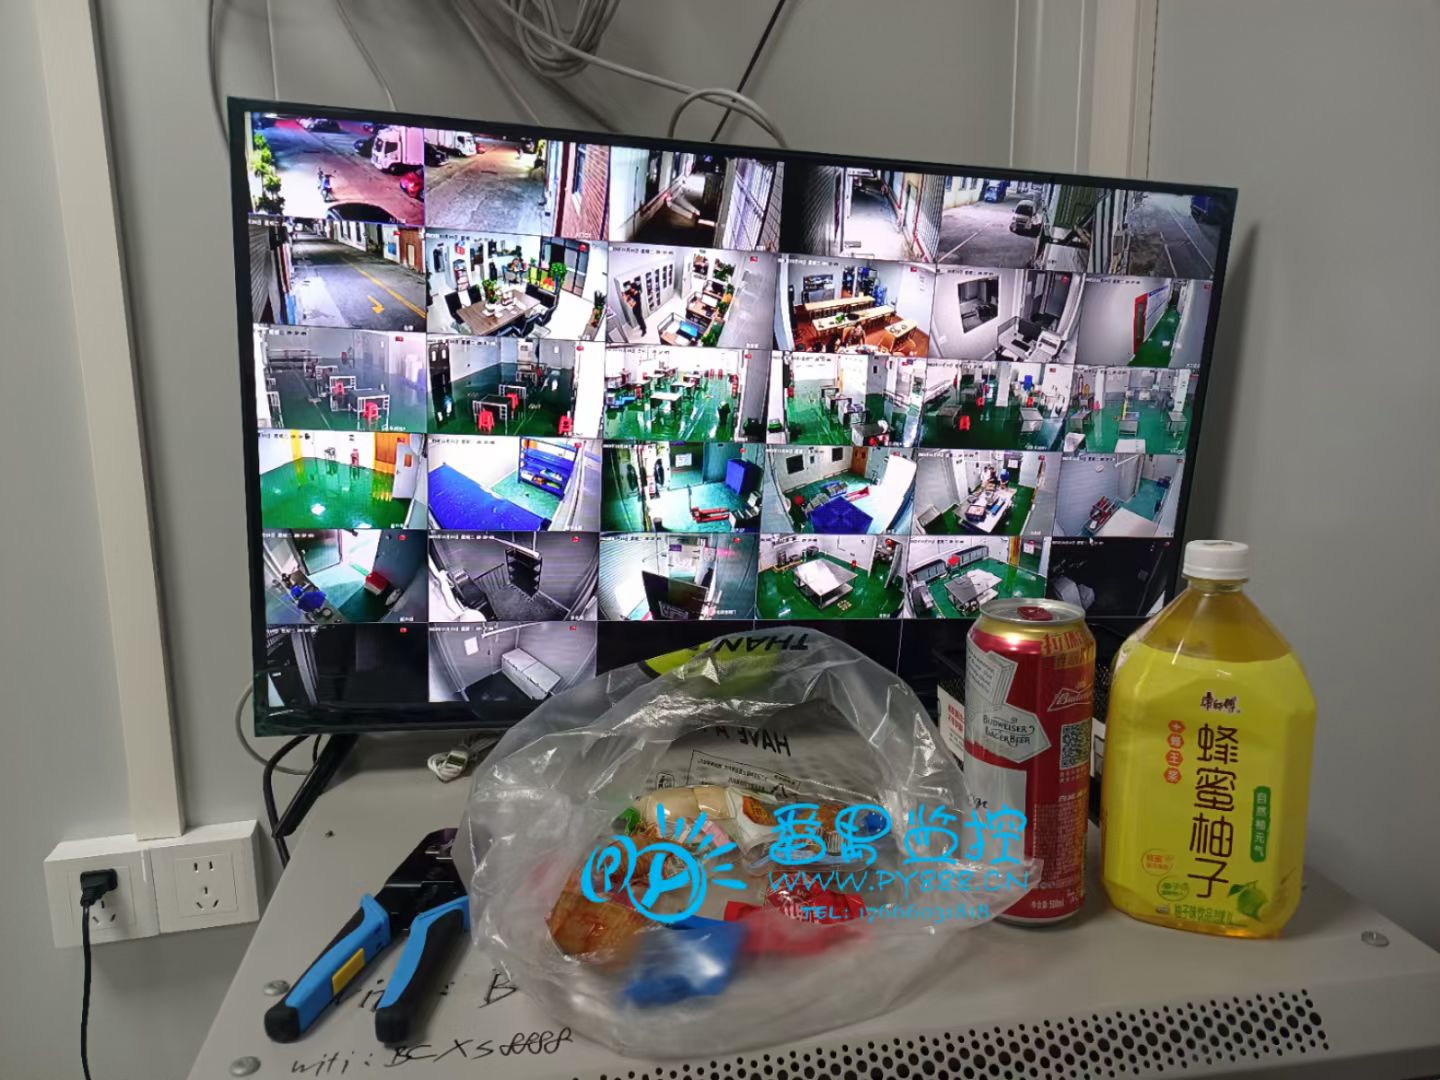 番禺南珑工业区冷链公司无线网络覆盖工程